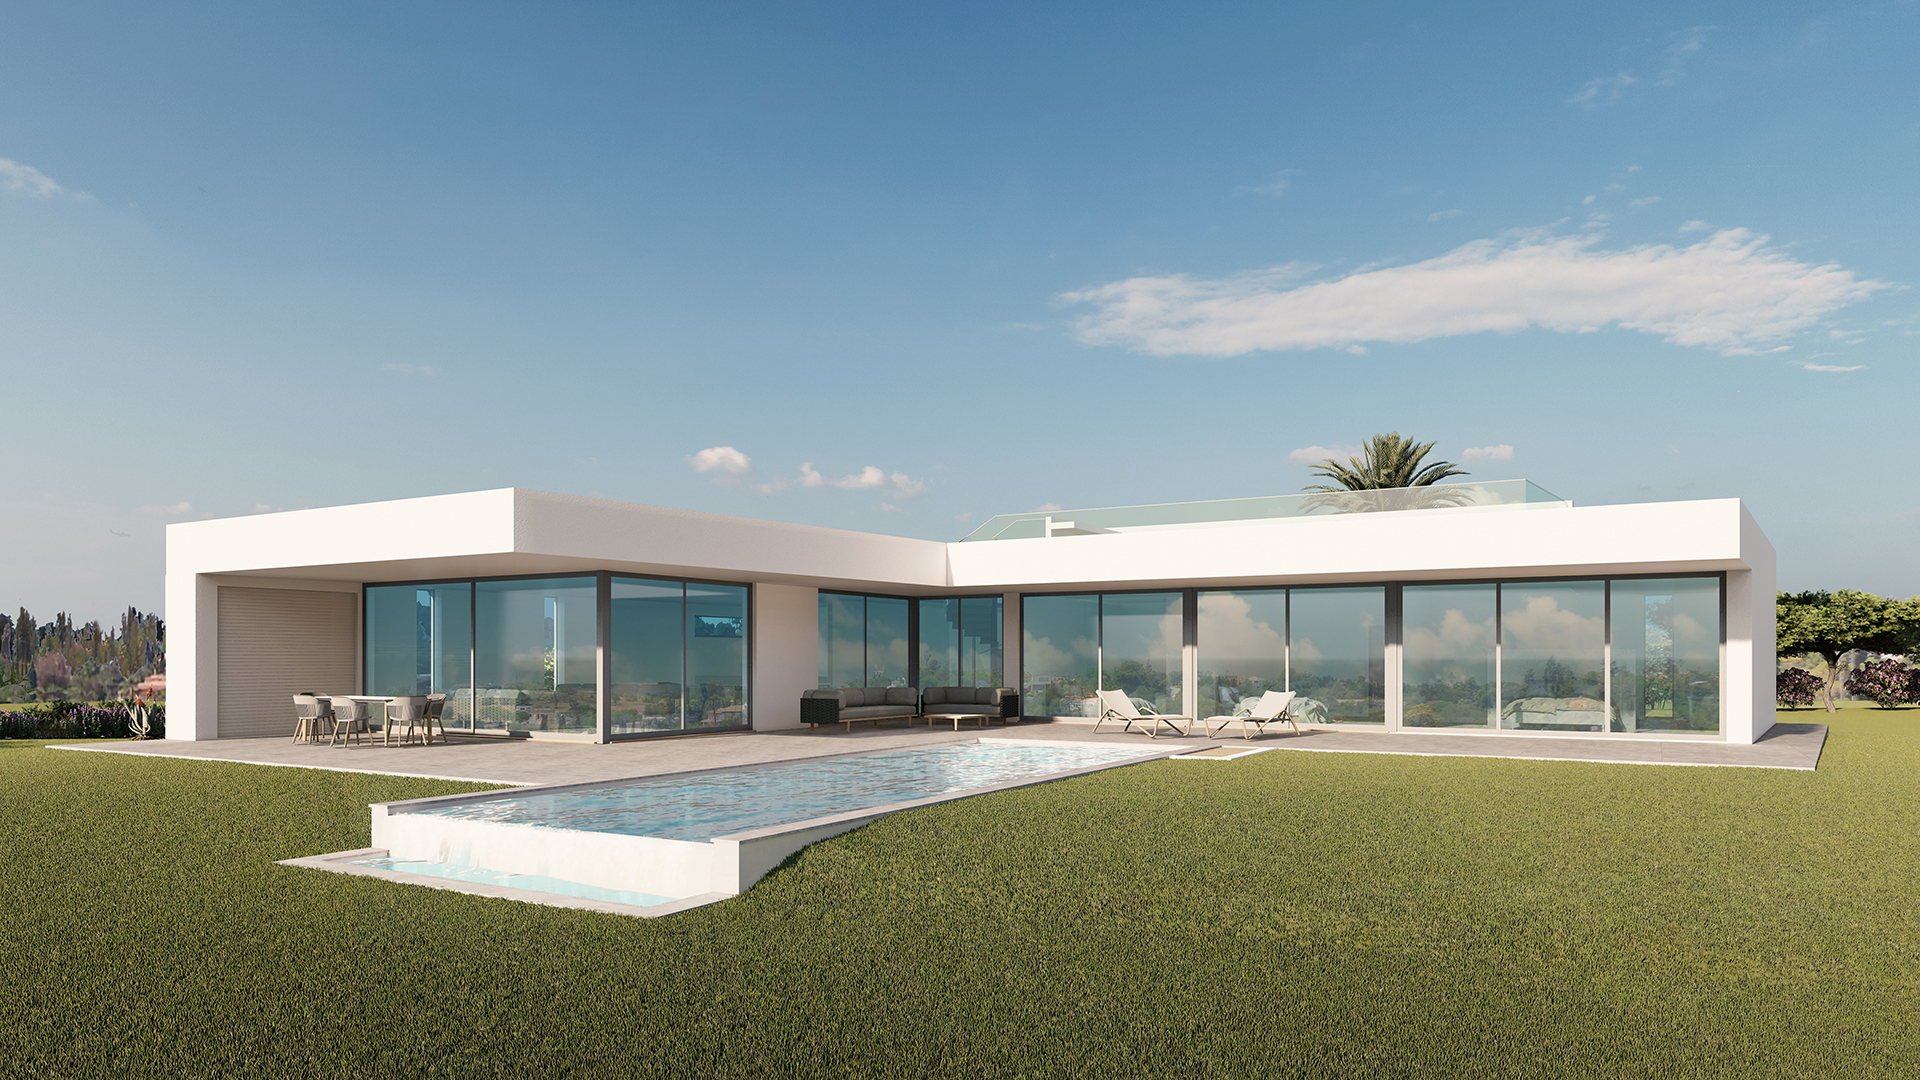 BAUBEGINN IN KÜRZE- Moderne 3 SZ Villa mit Pool und Meerblick, in der Nähe von Lagos, West Algarve | LG990 Das Projekt ist in der Genehmigungsphase, der Baubeginn erfolgt entsprechend. 
Es ist eine modernen 3 SZ Villa mit grossem Pool und Garage auf einem Grundstück von 3162 m². 
